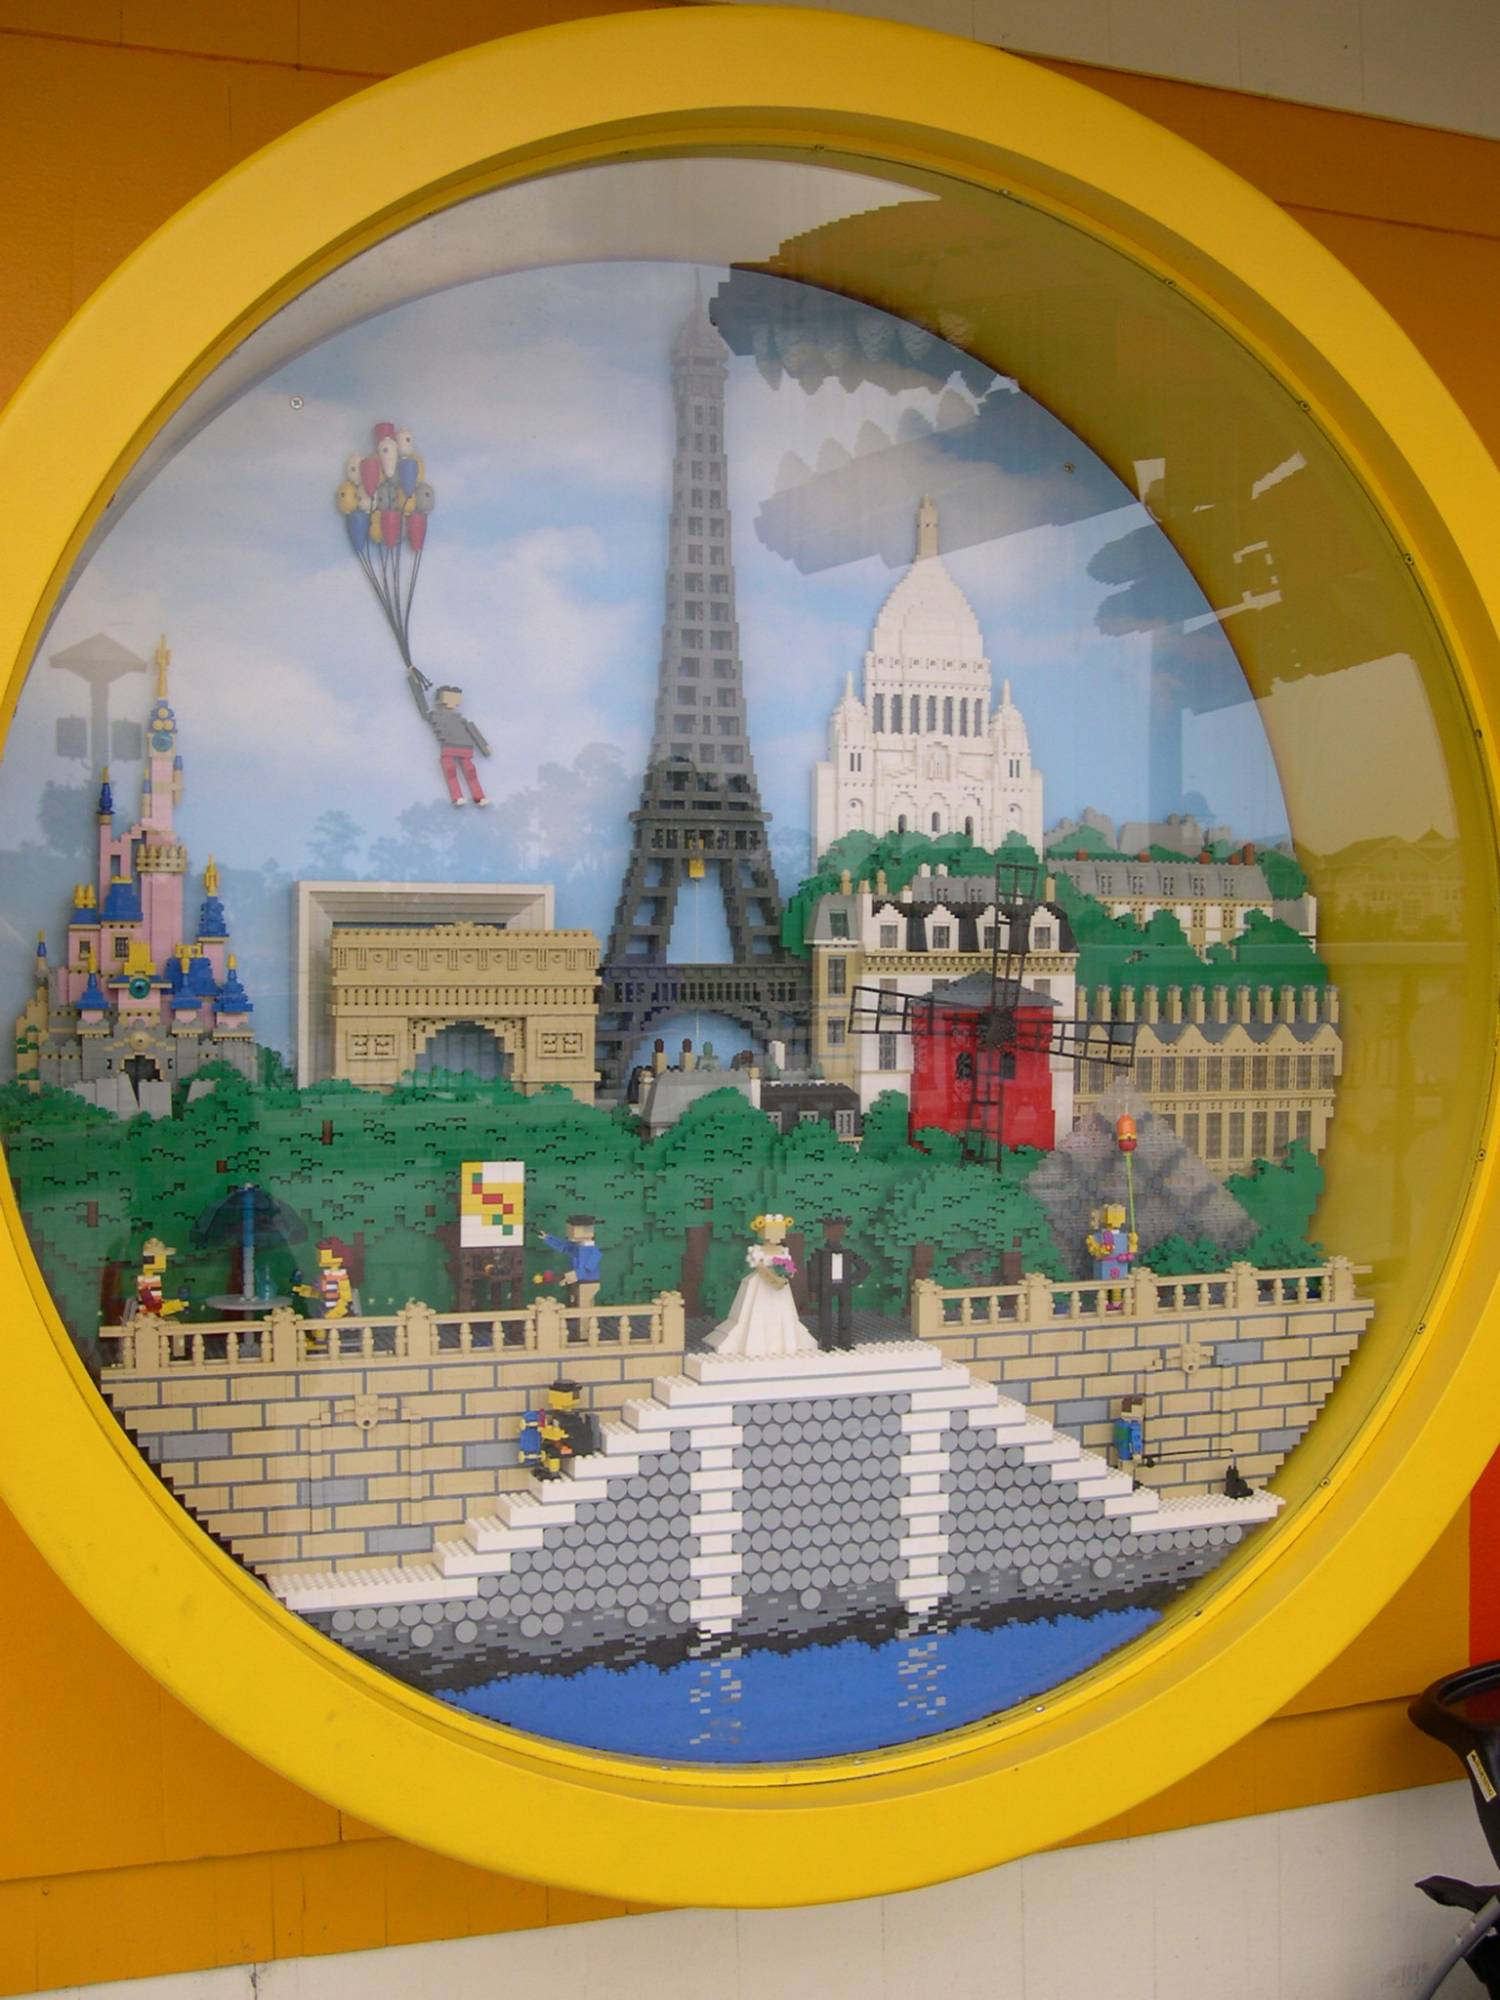 Downtown Disney - Lego Store Window